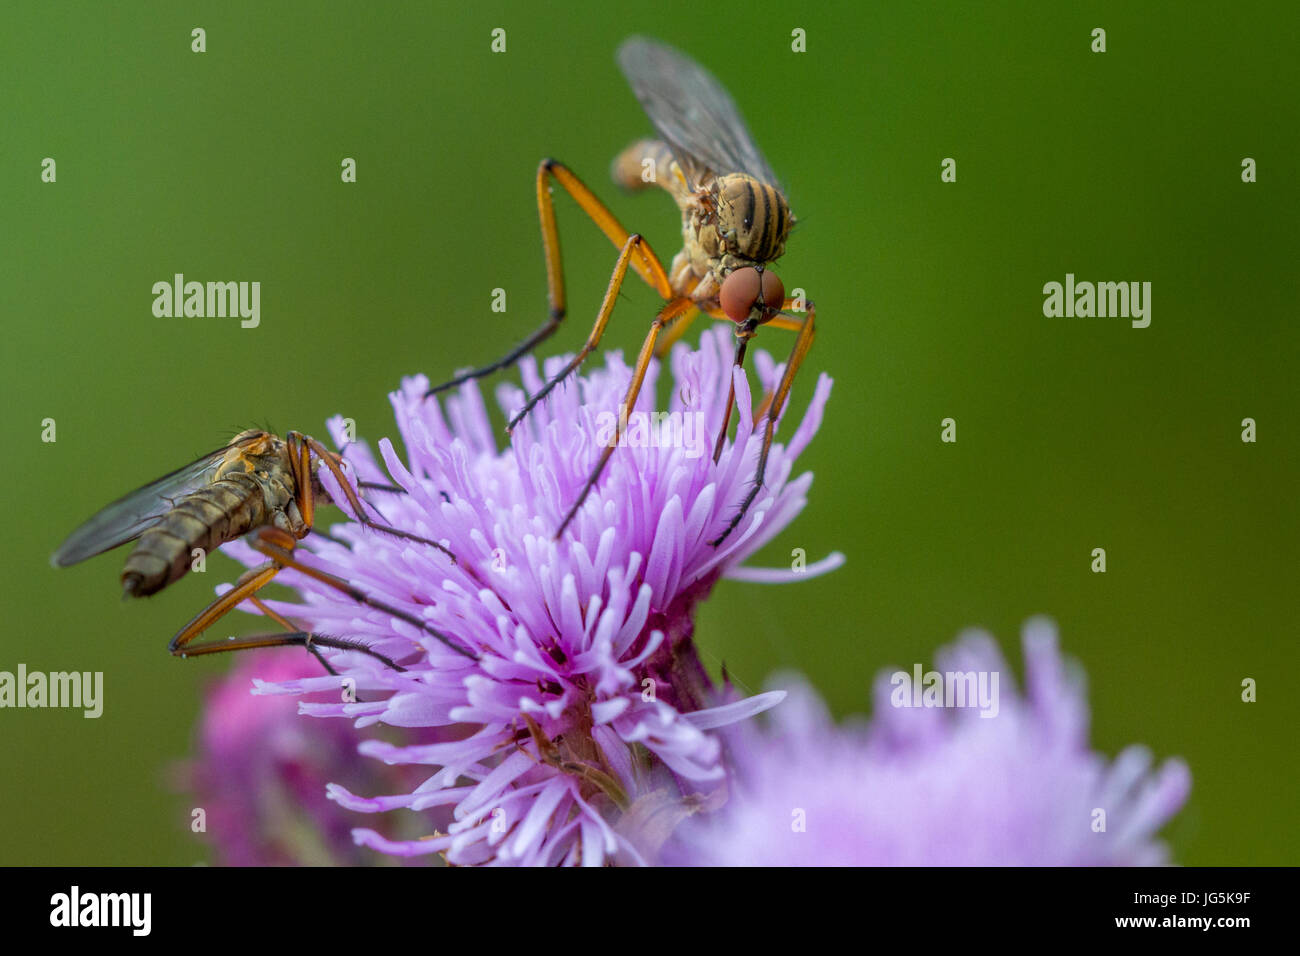 Deux poignard ou danse mouches (Empis livida) boire le nectar des fleurs de chardon violet UK, faune, West Yorkshire Banque D'Images